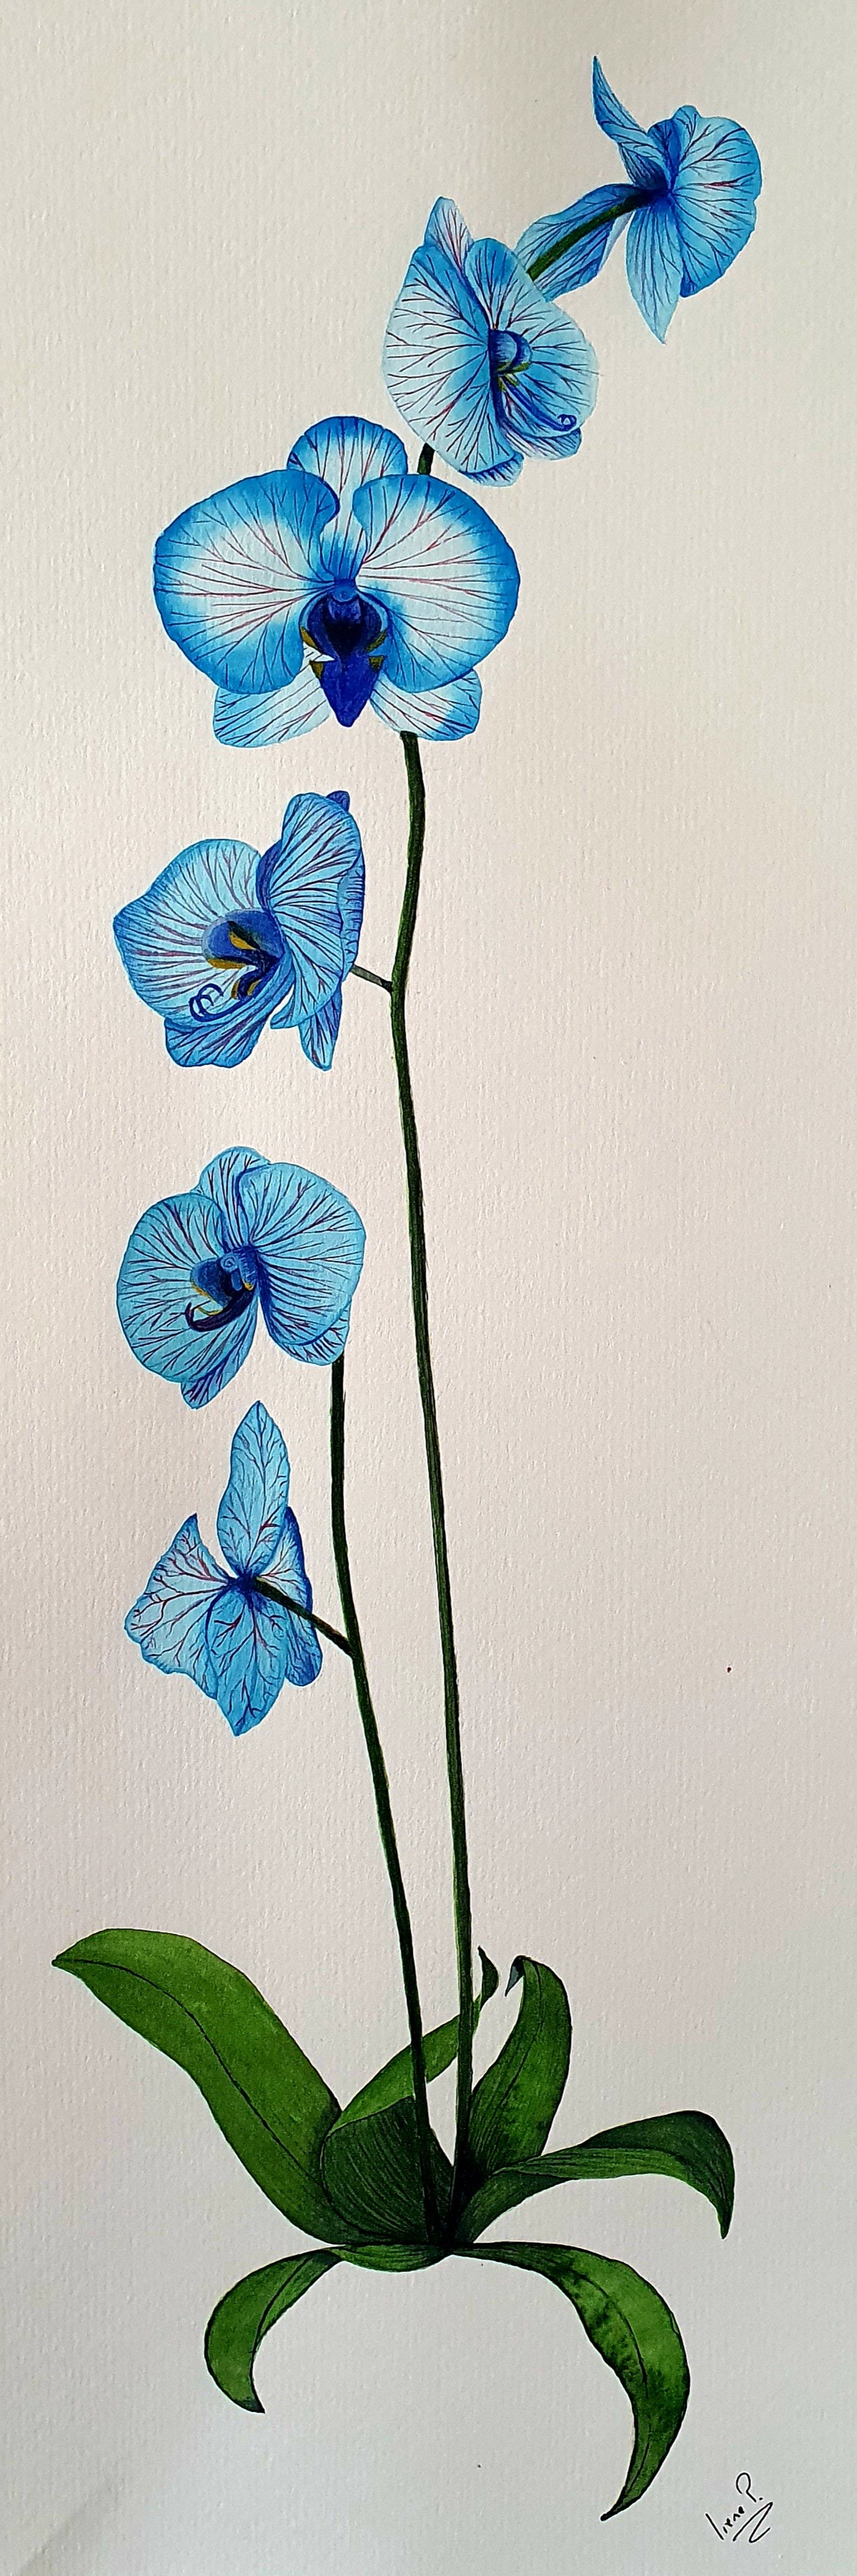 Orquídea Azul Celeste, Painting by Irene Pestana Eliche | Artmajeur